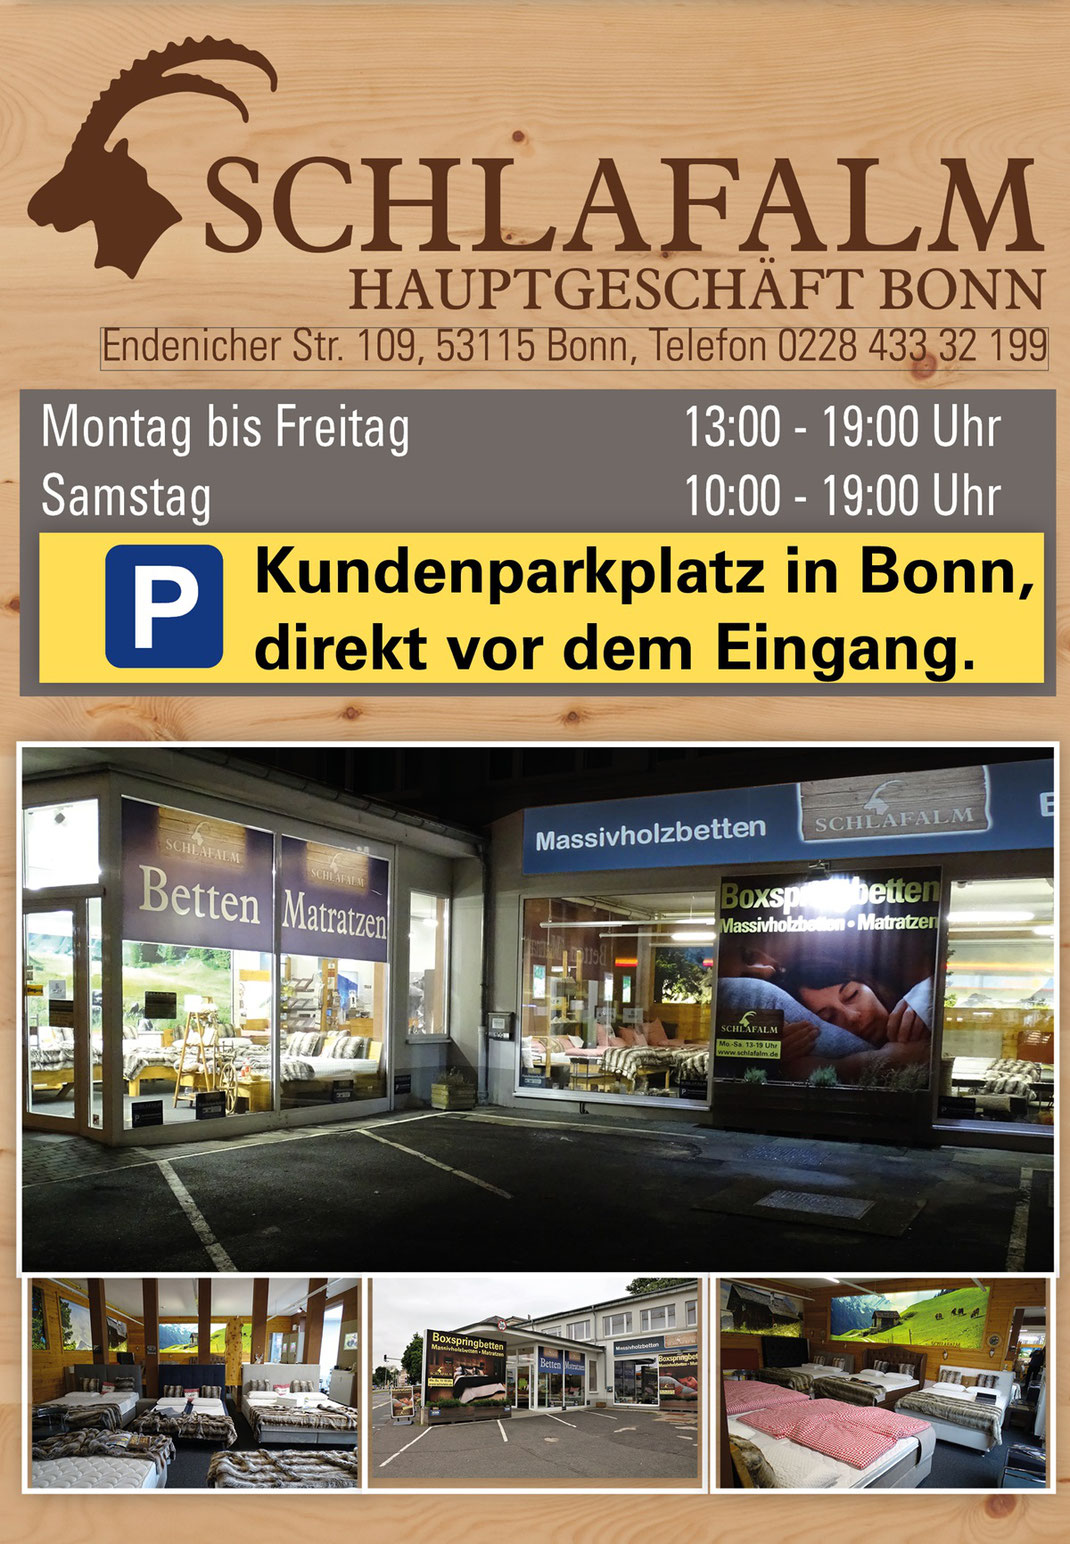 Ein Bild für unsere Besucher aus Köln, Bonn und dem Ahrtal das Text, Massivholzbetten, Matratzen, Boxspringbetten und Zirbenprodukte enthält.